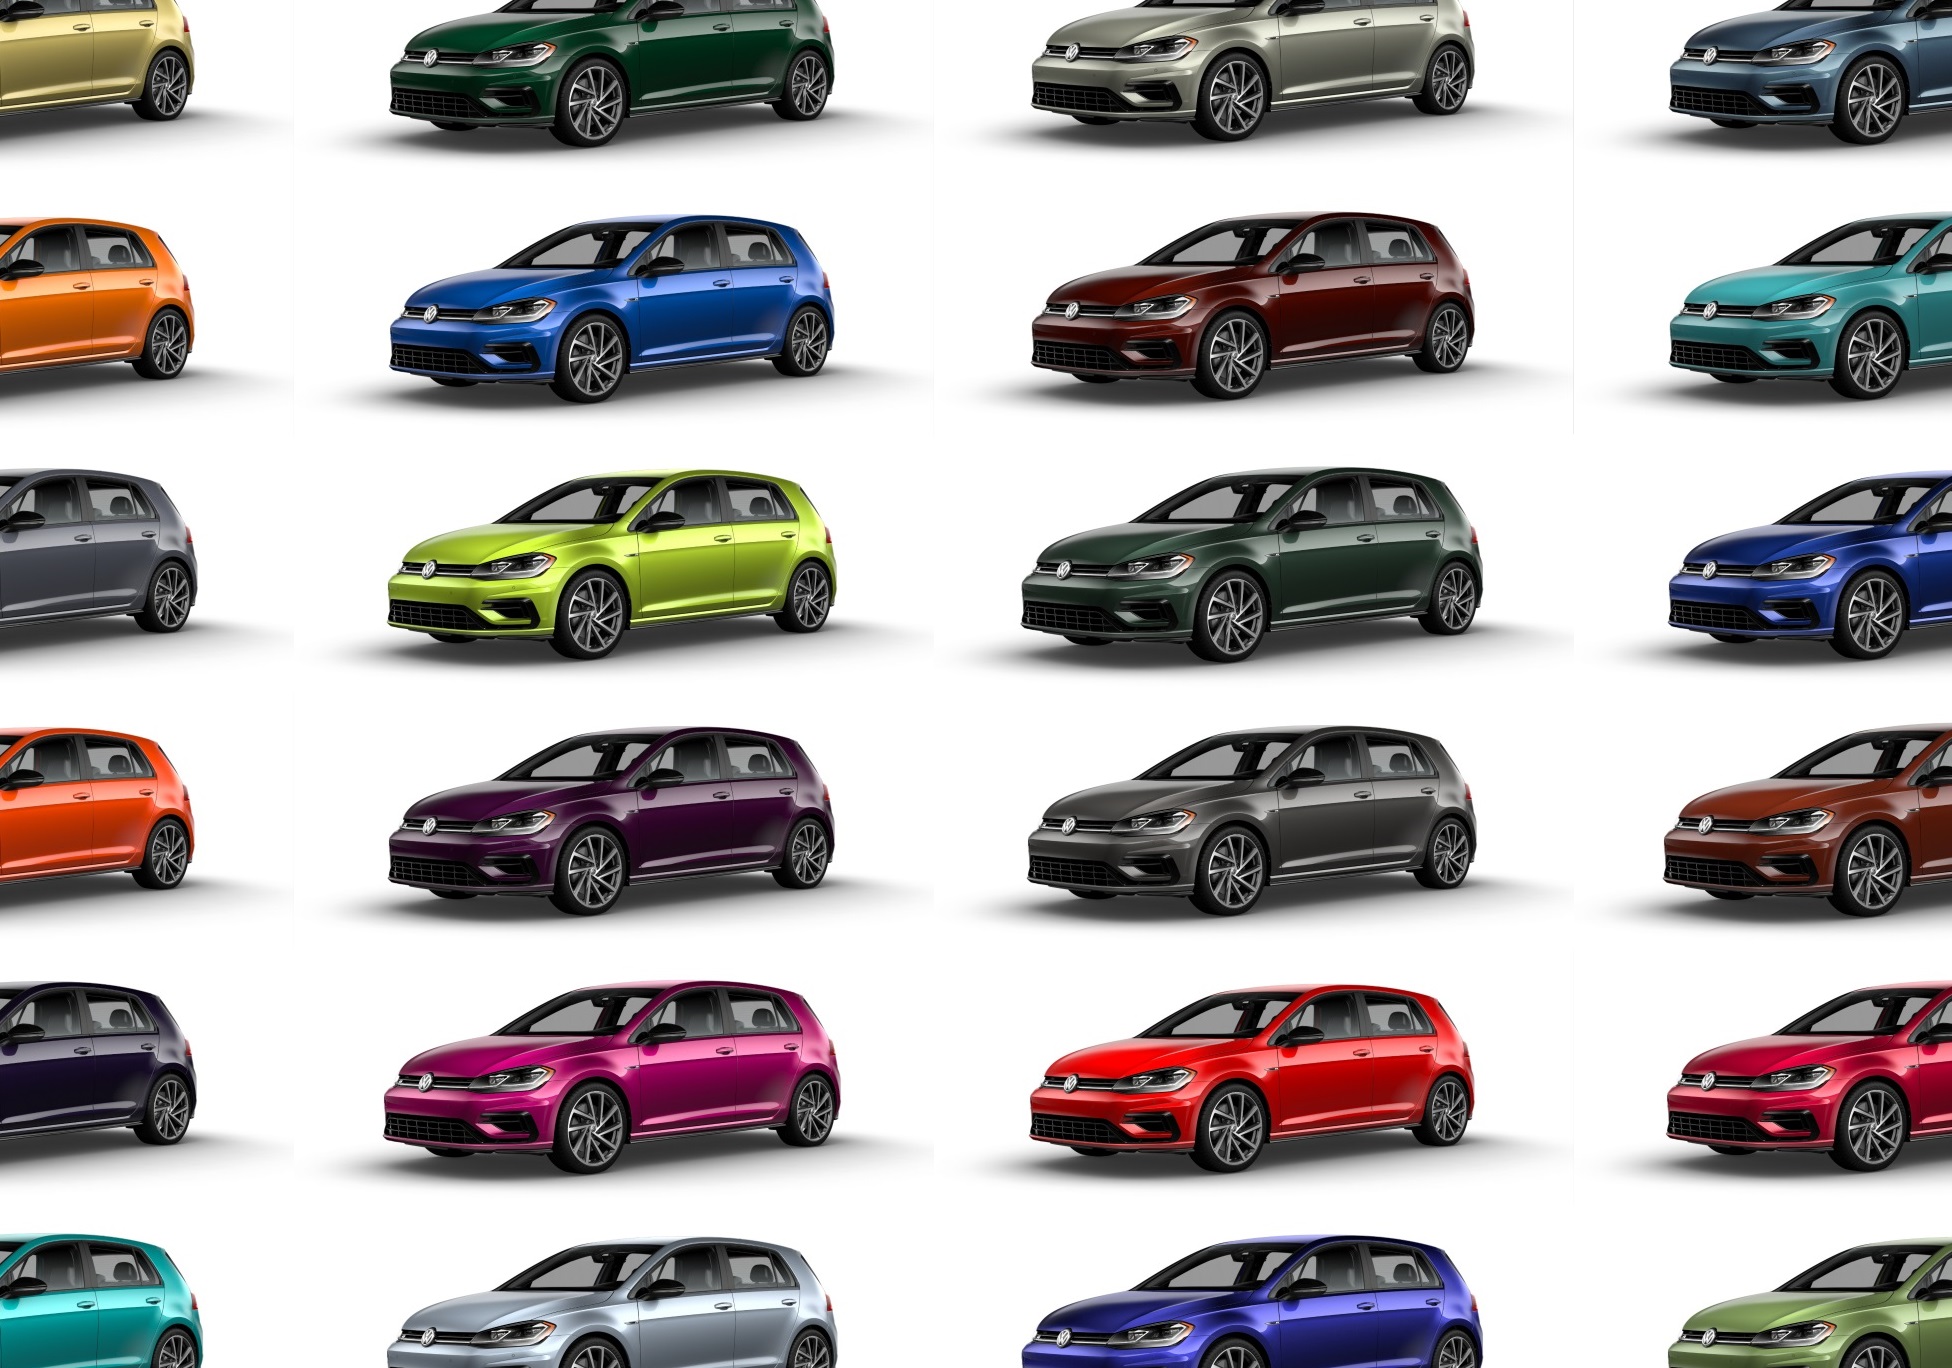 Audi Paint Colours Chart